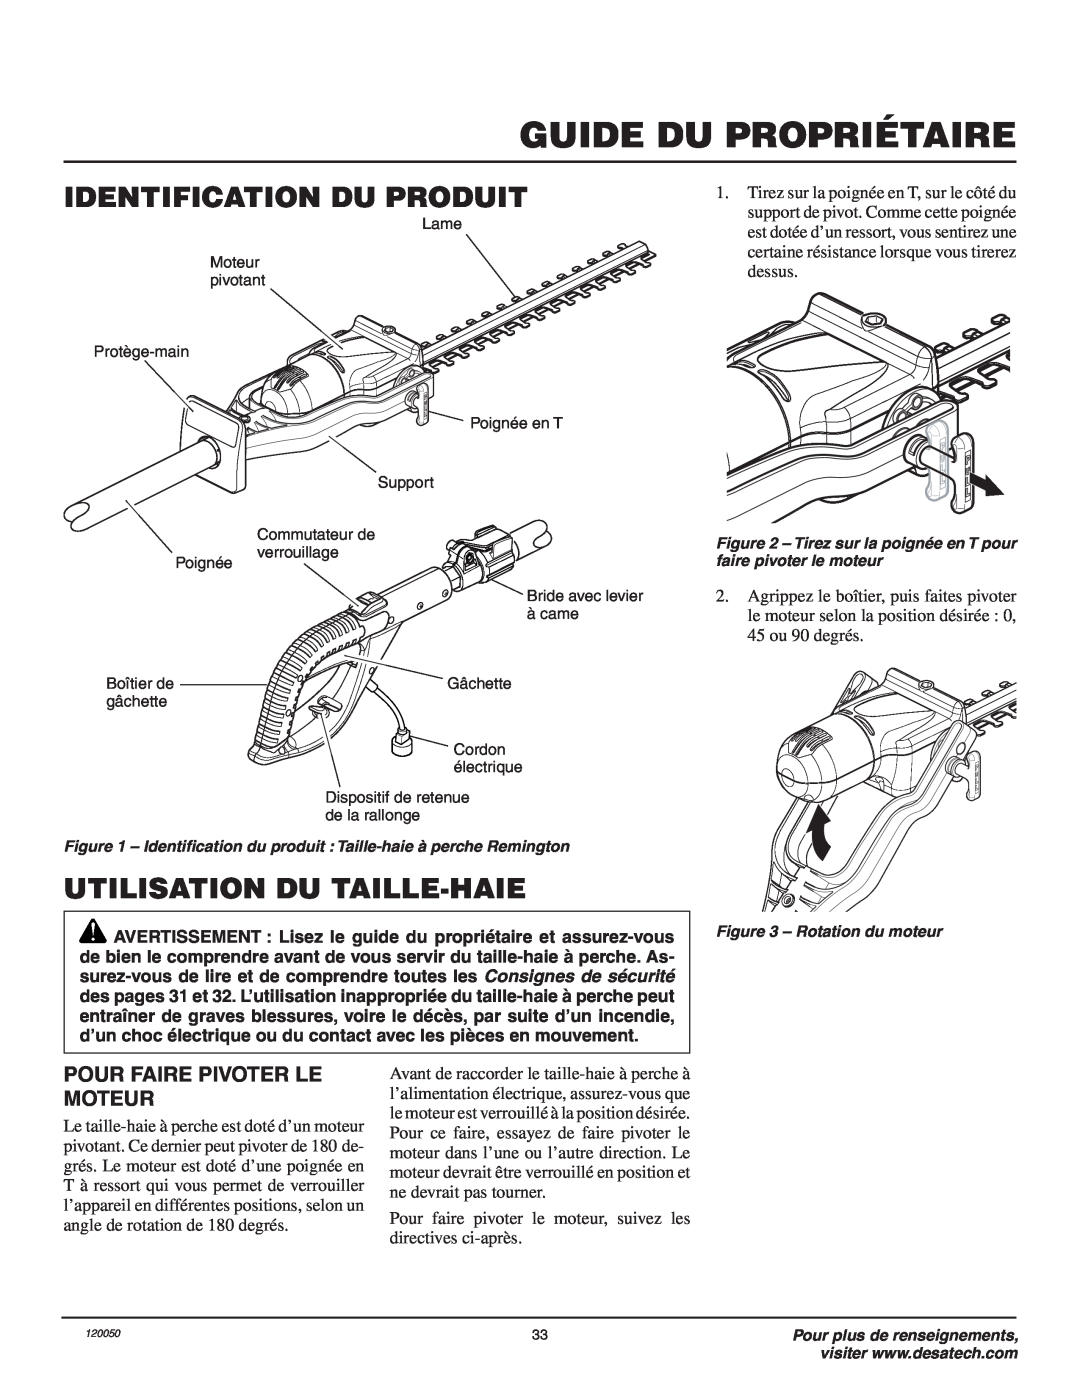 Remington AT3017BCA owner manual Identification Du Produit, Utilisation Du Taille-Haie, Guide Du Propriétaire 